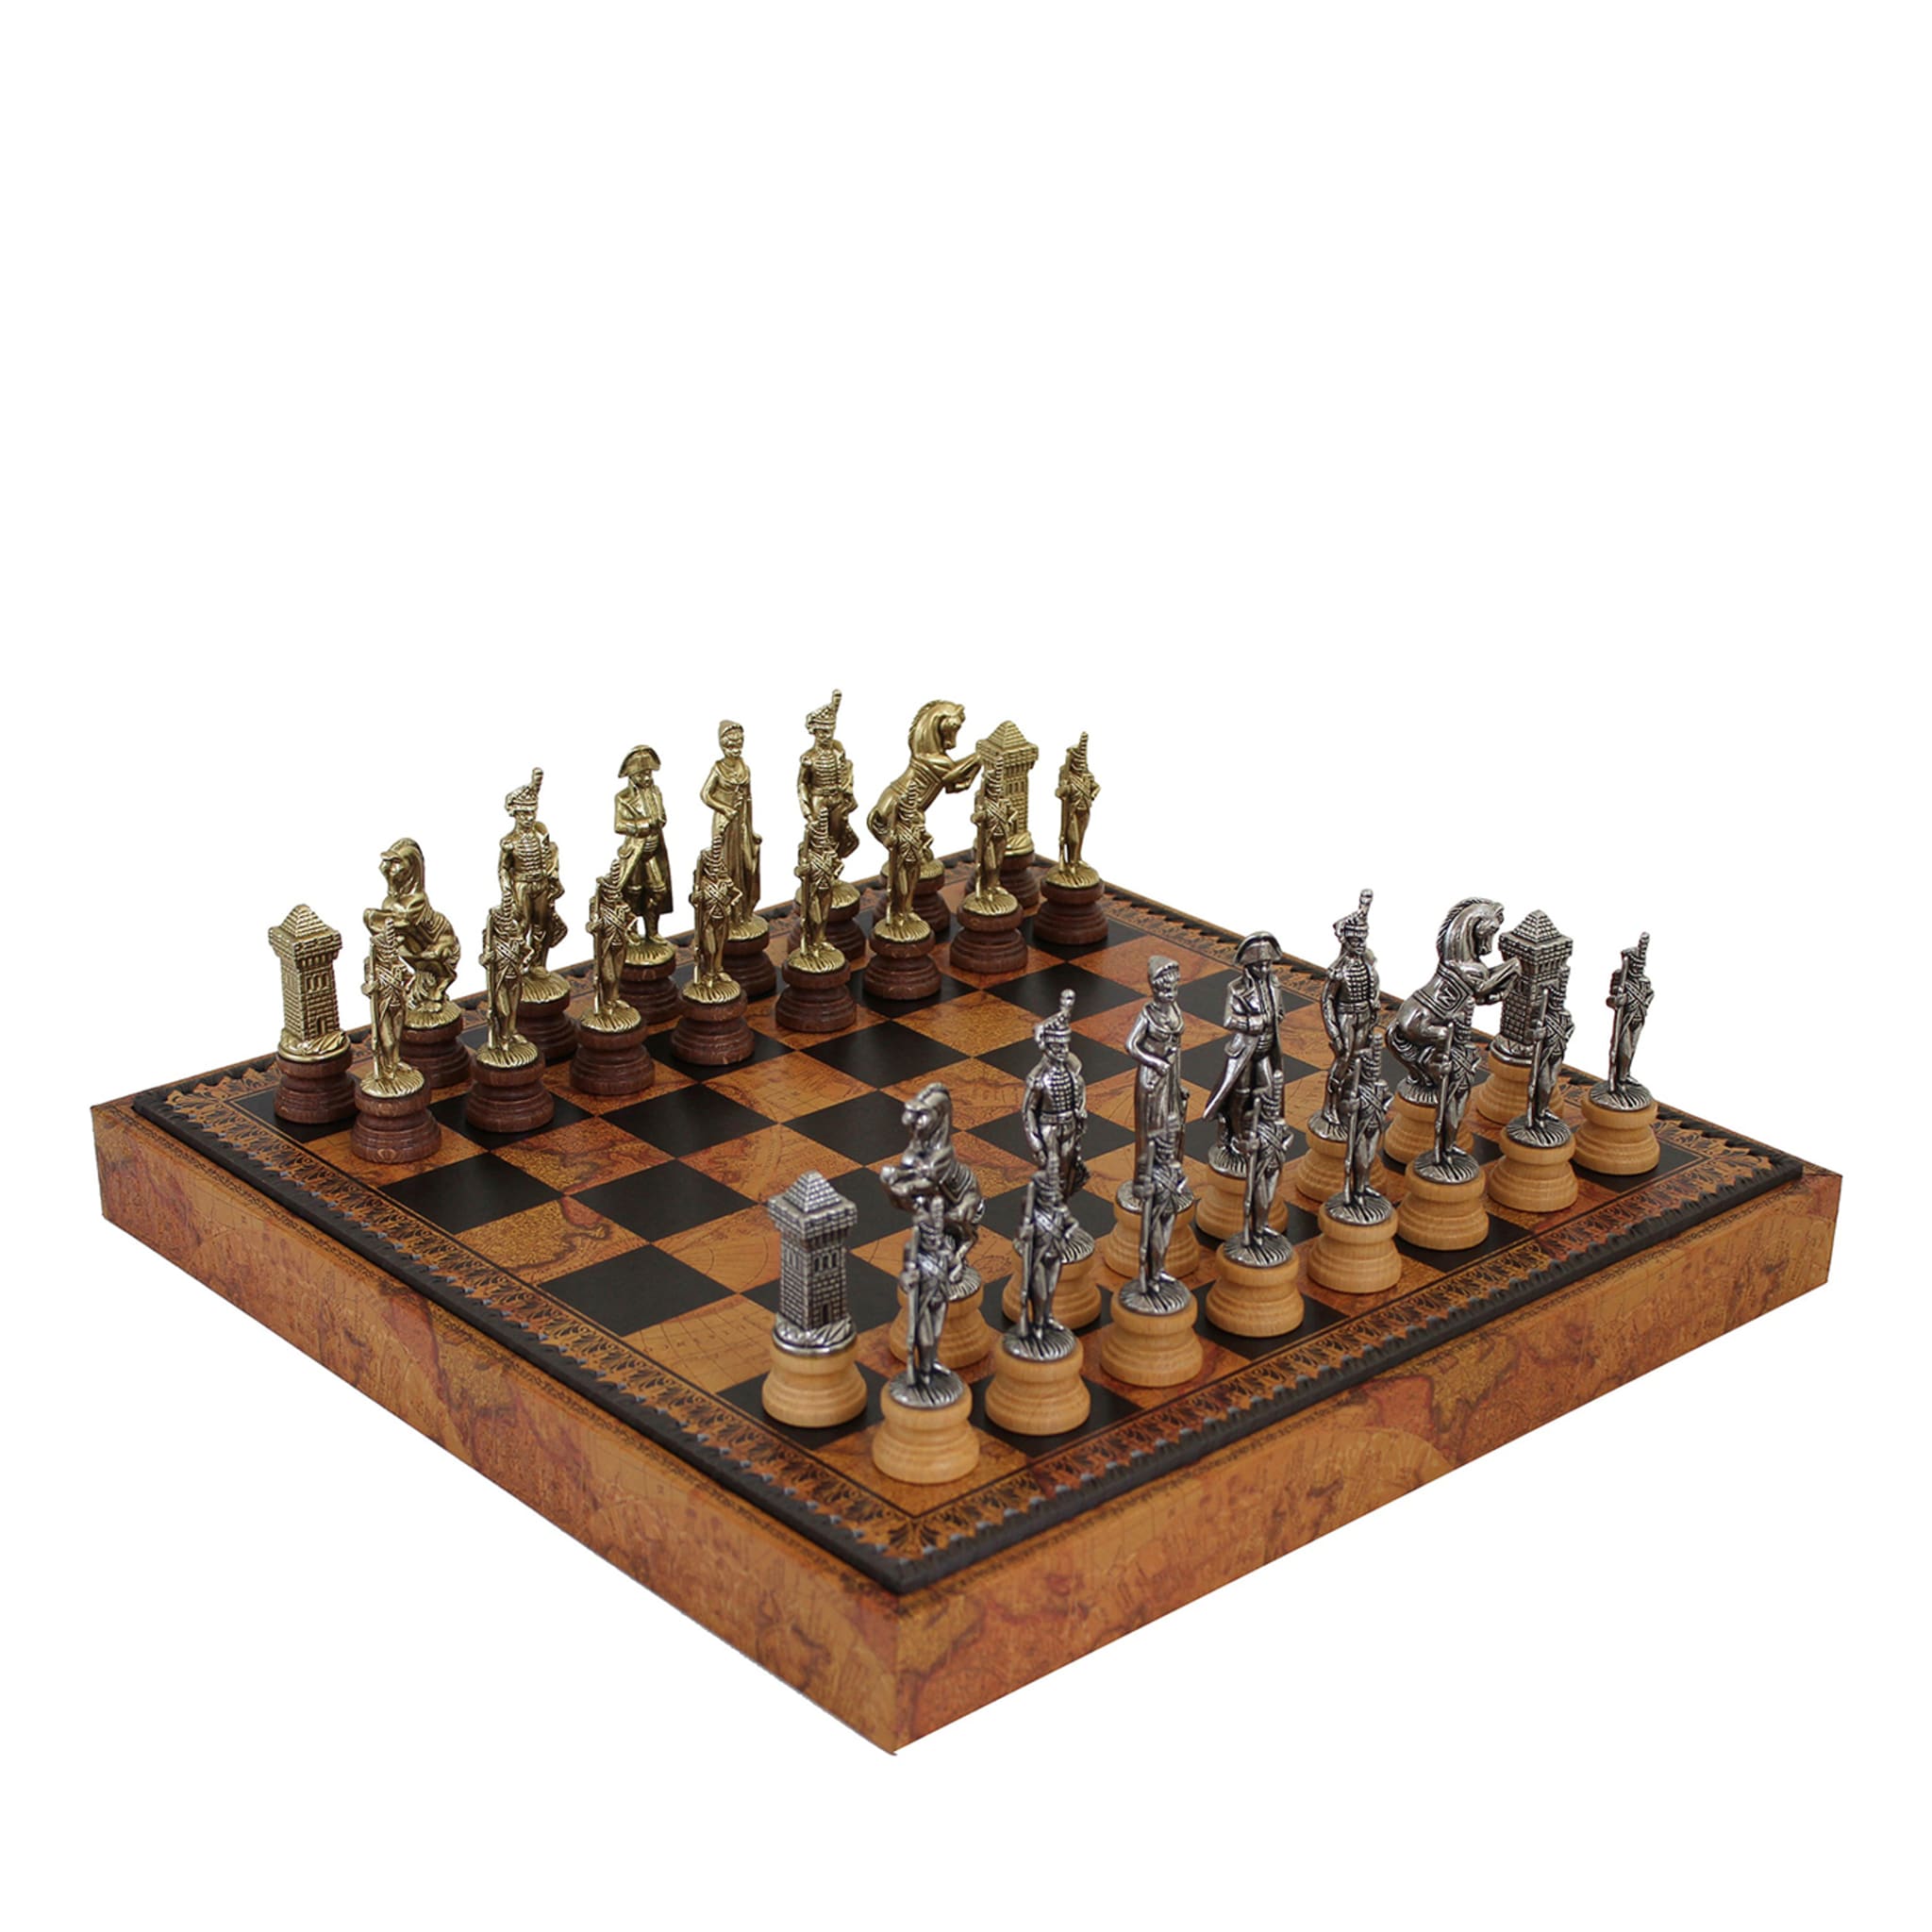 Juego de ajedrez Napoleone - Vista principal